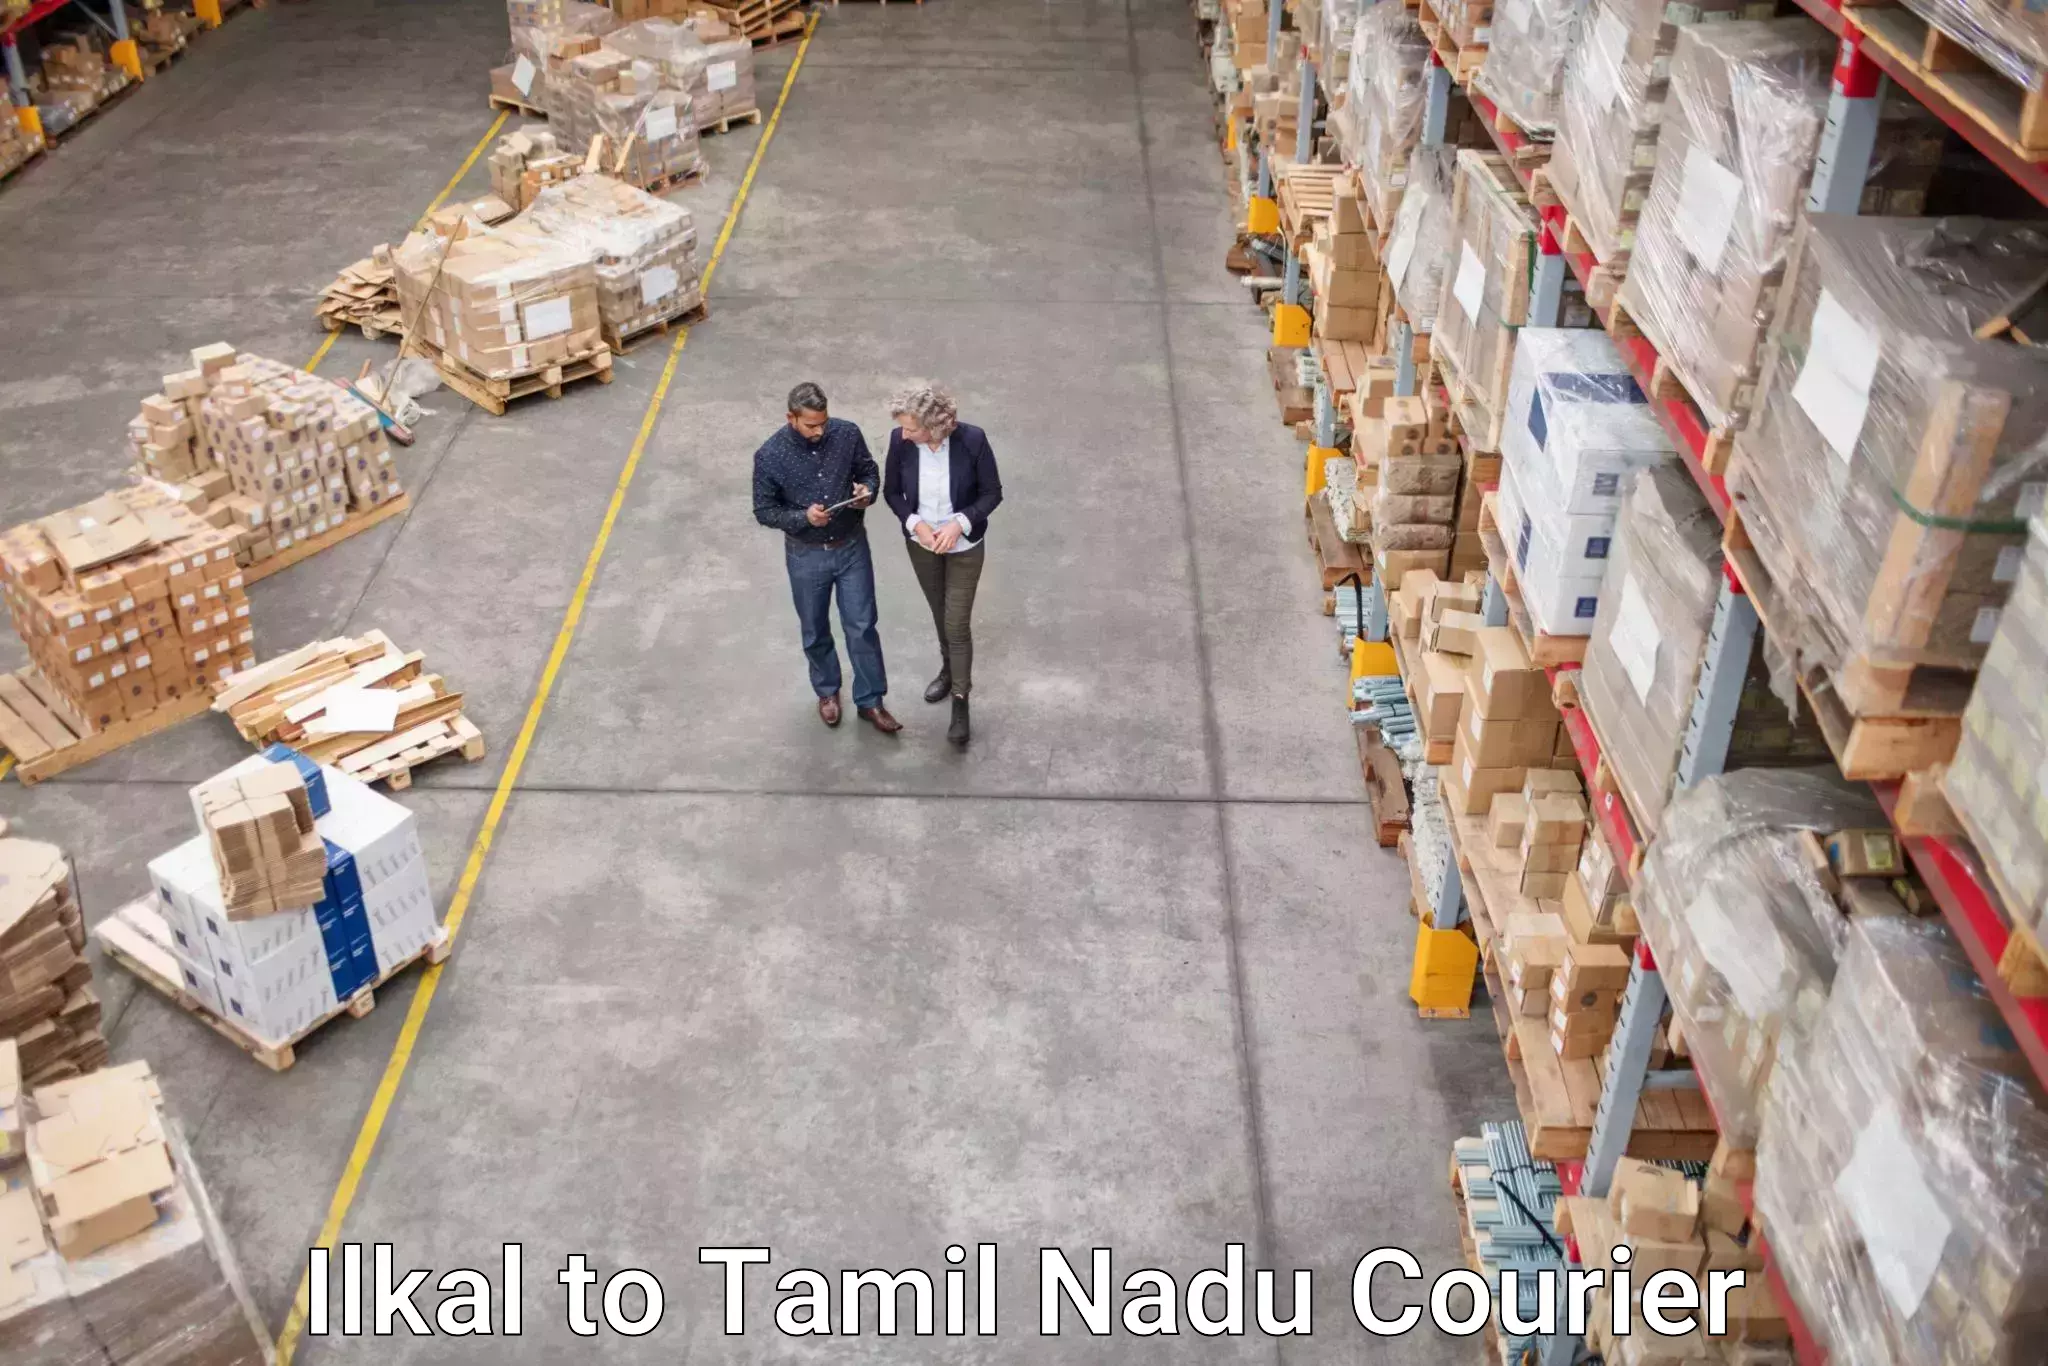 Express logistics service Ilkal to Tamil Nadu